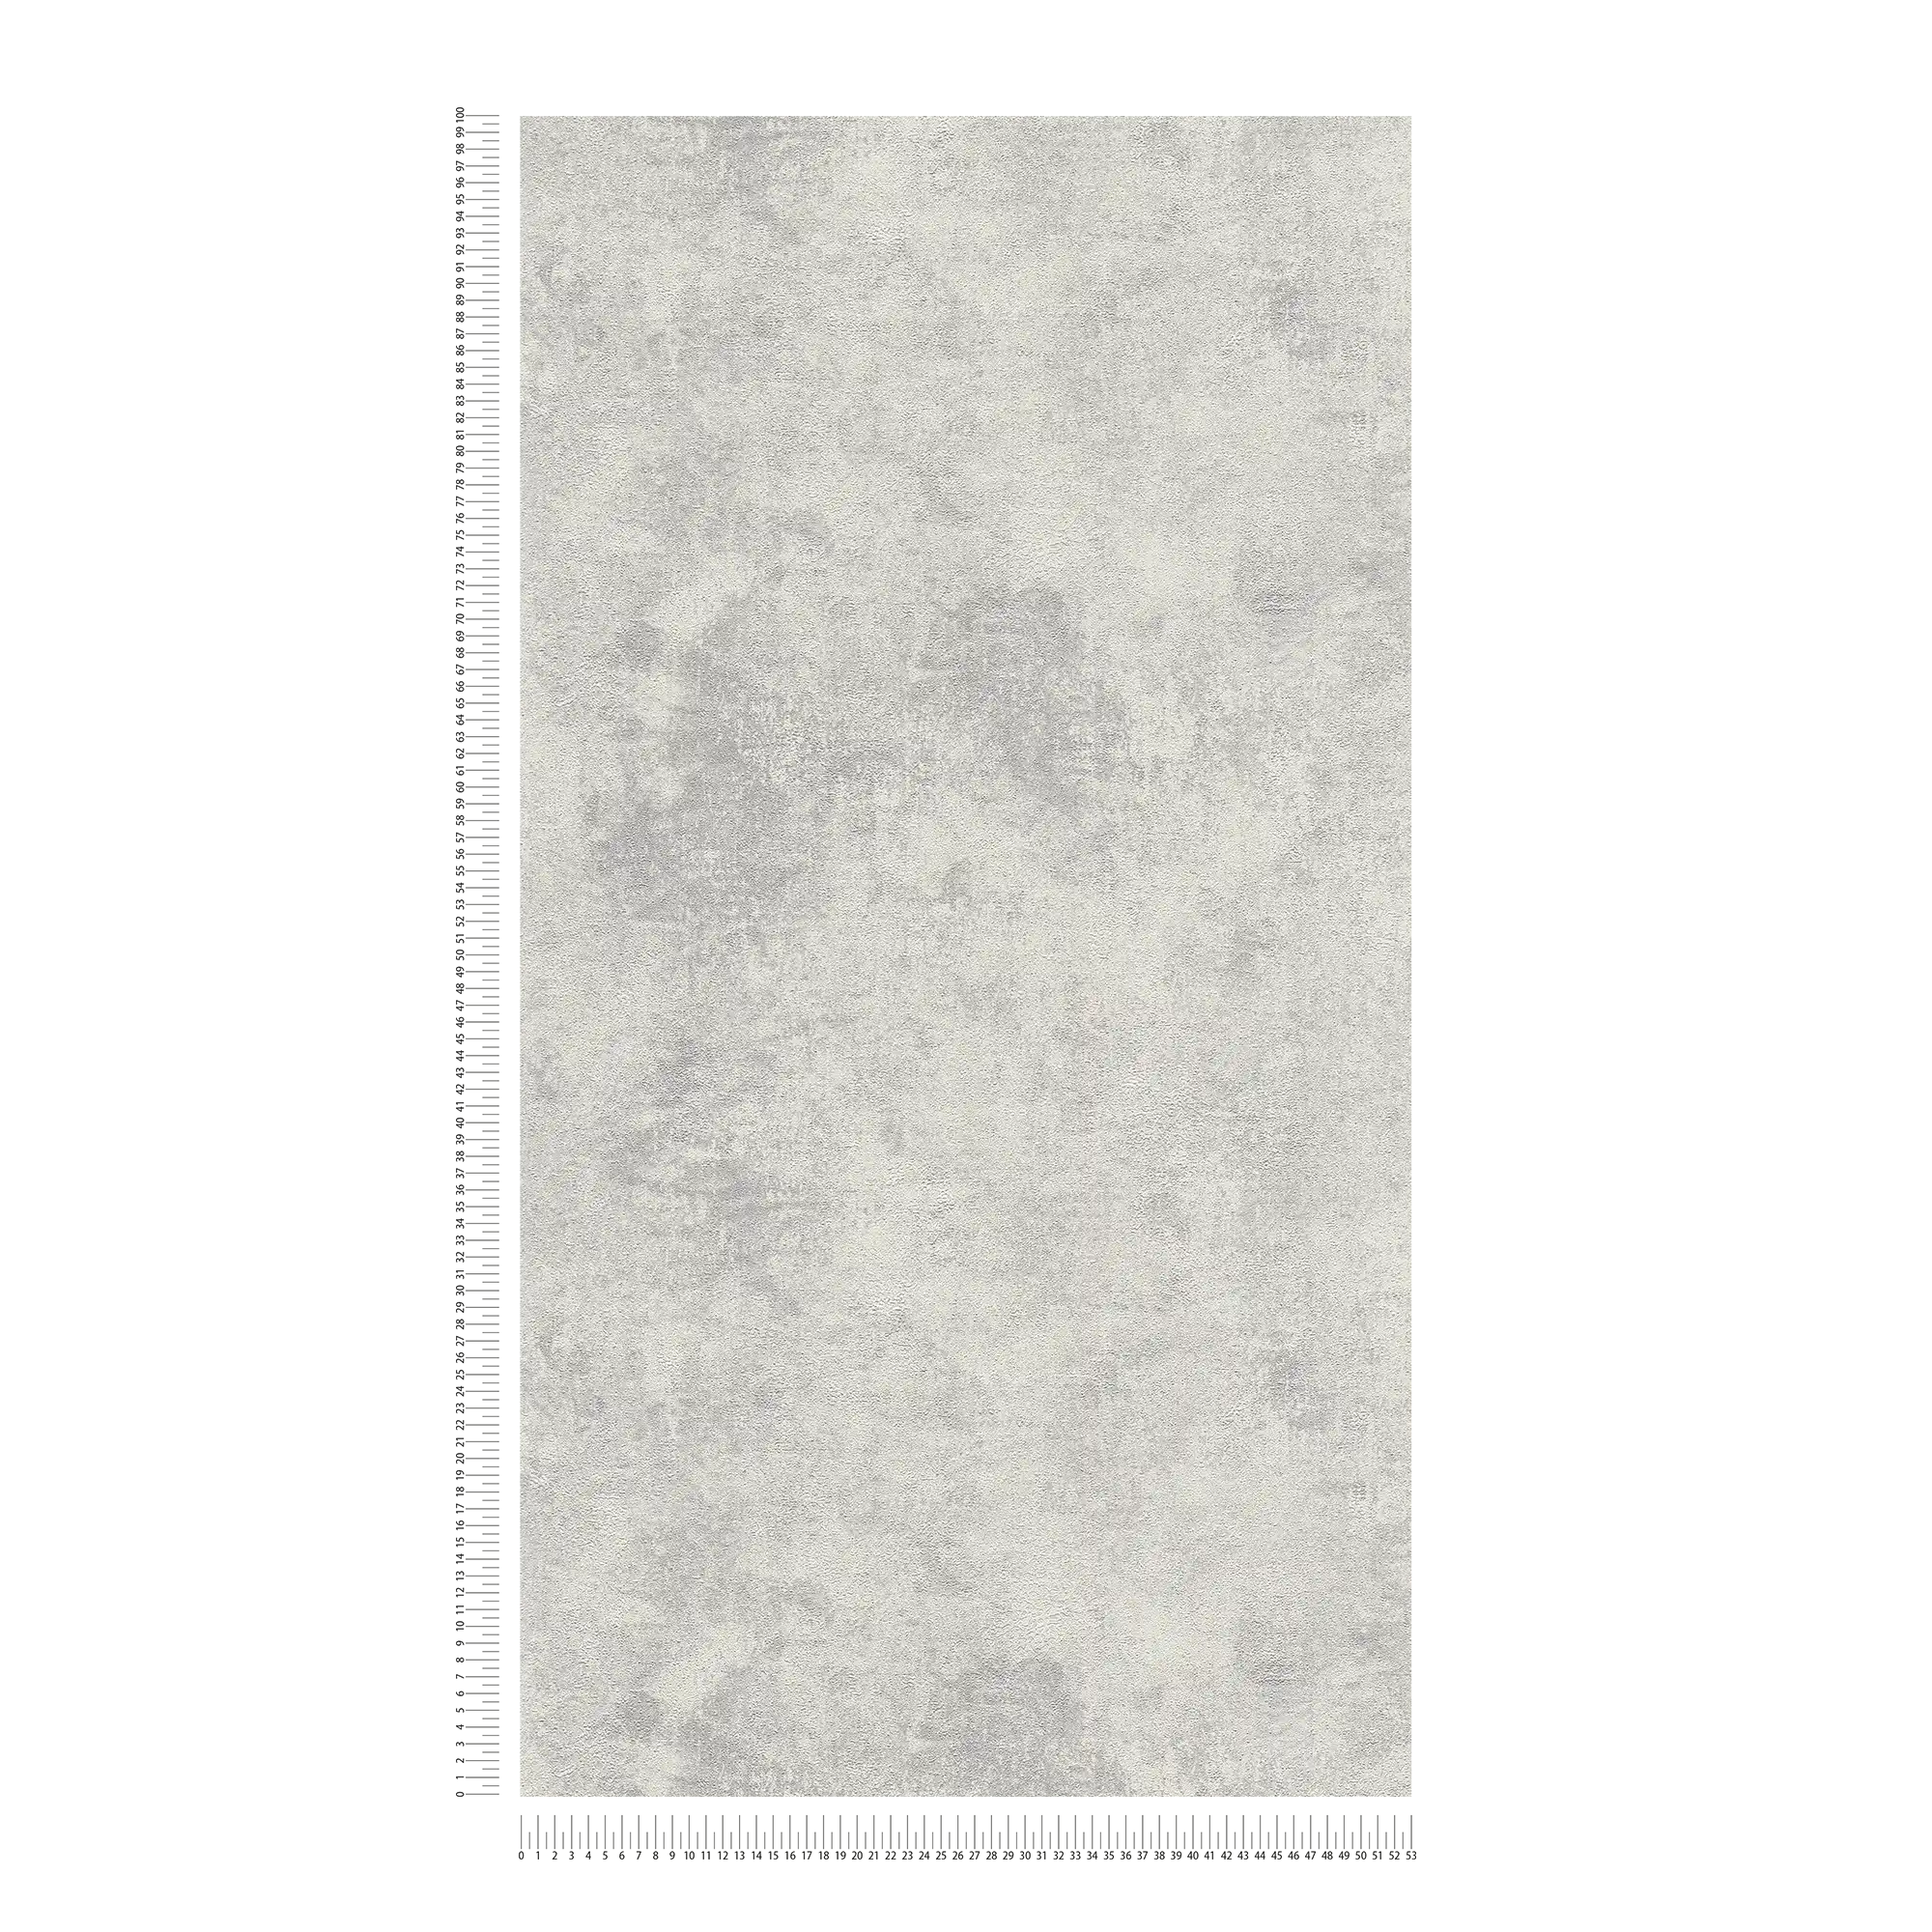             Carte da parati in tessuto non tessuto con aspetto di intonaco a disco e motivo strutturato - grigio, argento
        